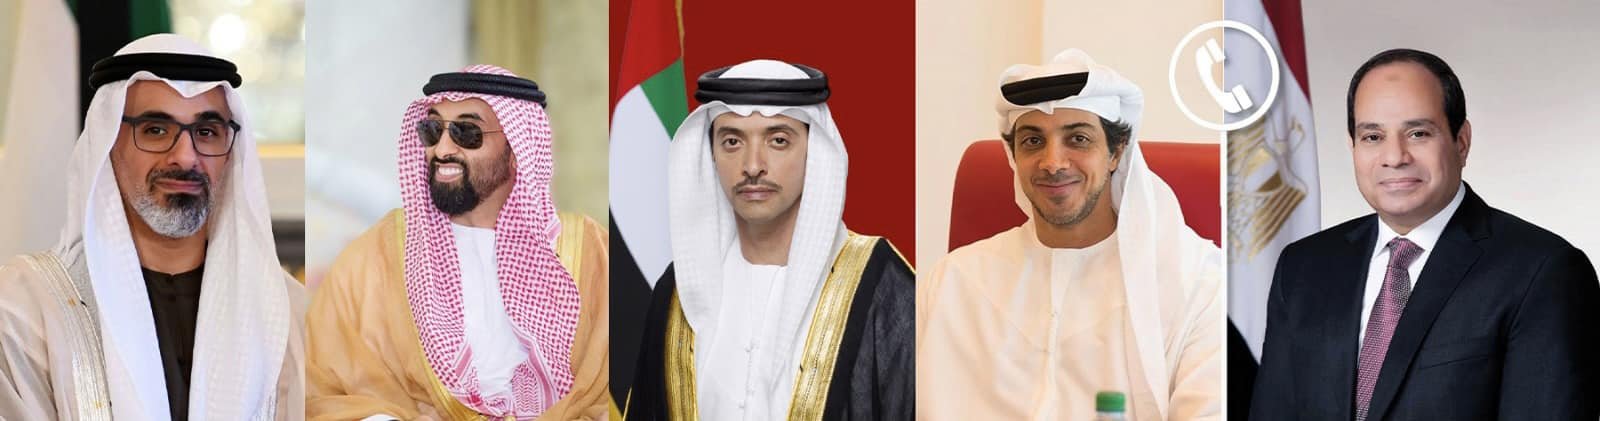 السيسى يتقدم بالتهنئة خلال الاتصالات بمناسبة التعيينات القيادية الجديدة في دولة الإمارات الشقيقة